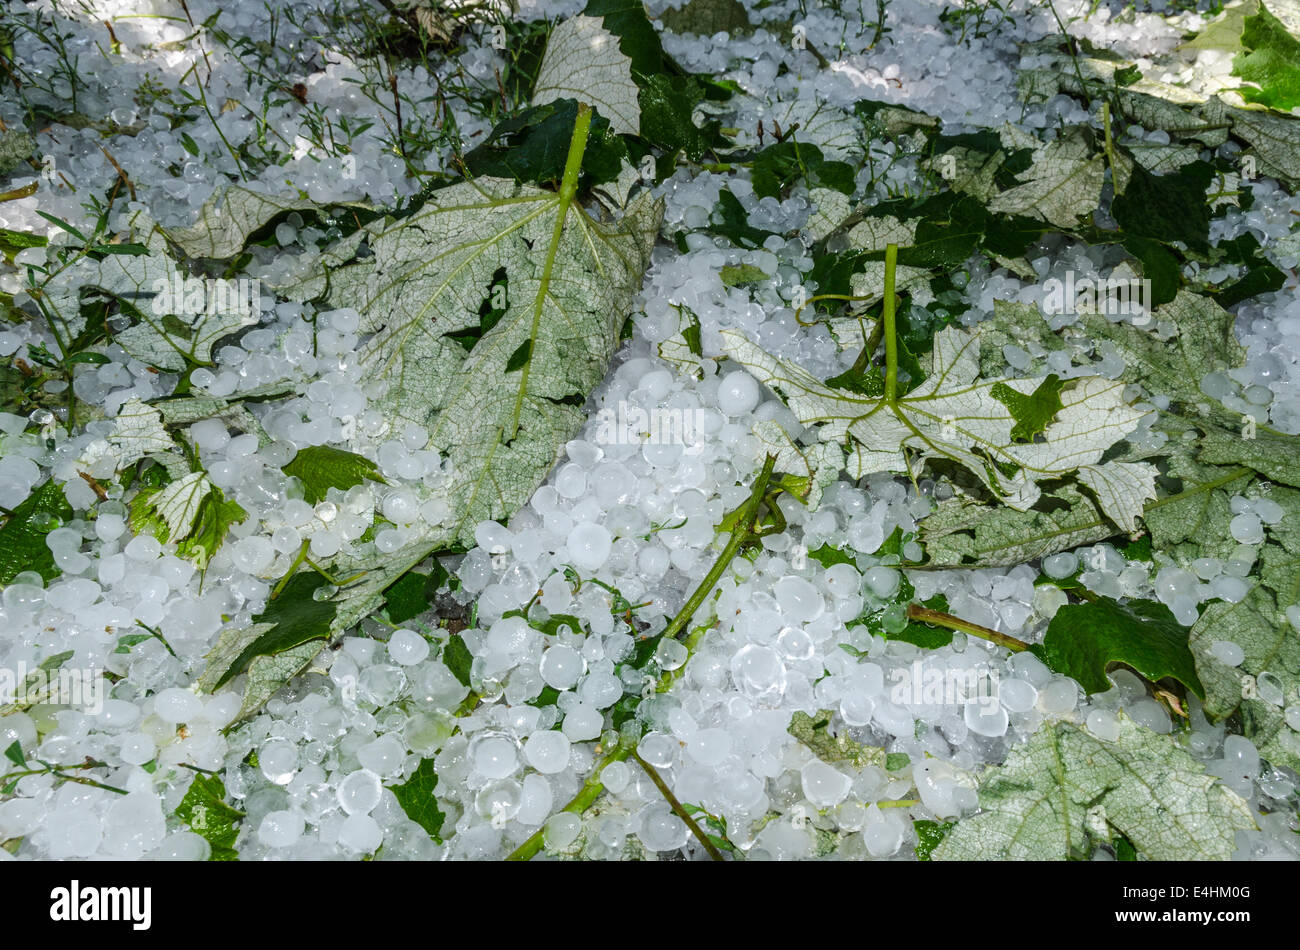 Boules de glace la grêle dans l'herbe après une forte pluie Banque D'Images